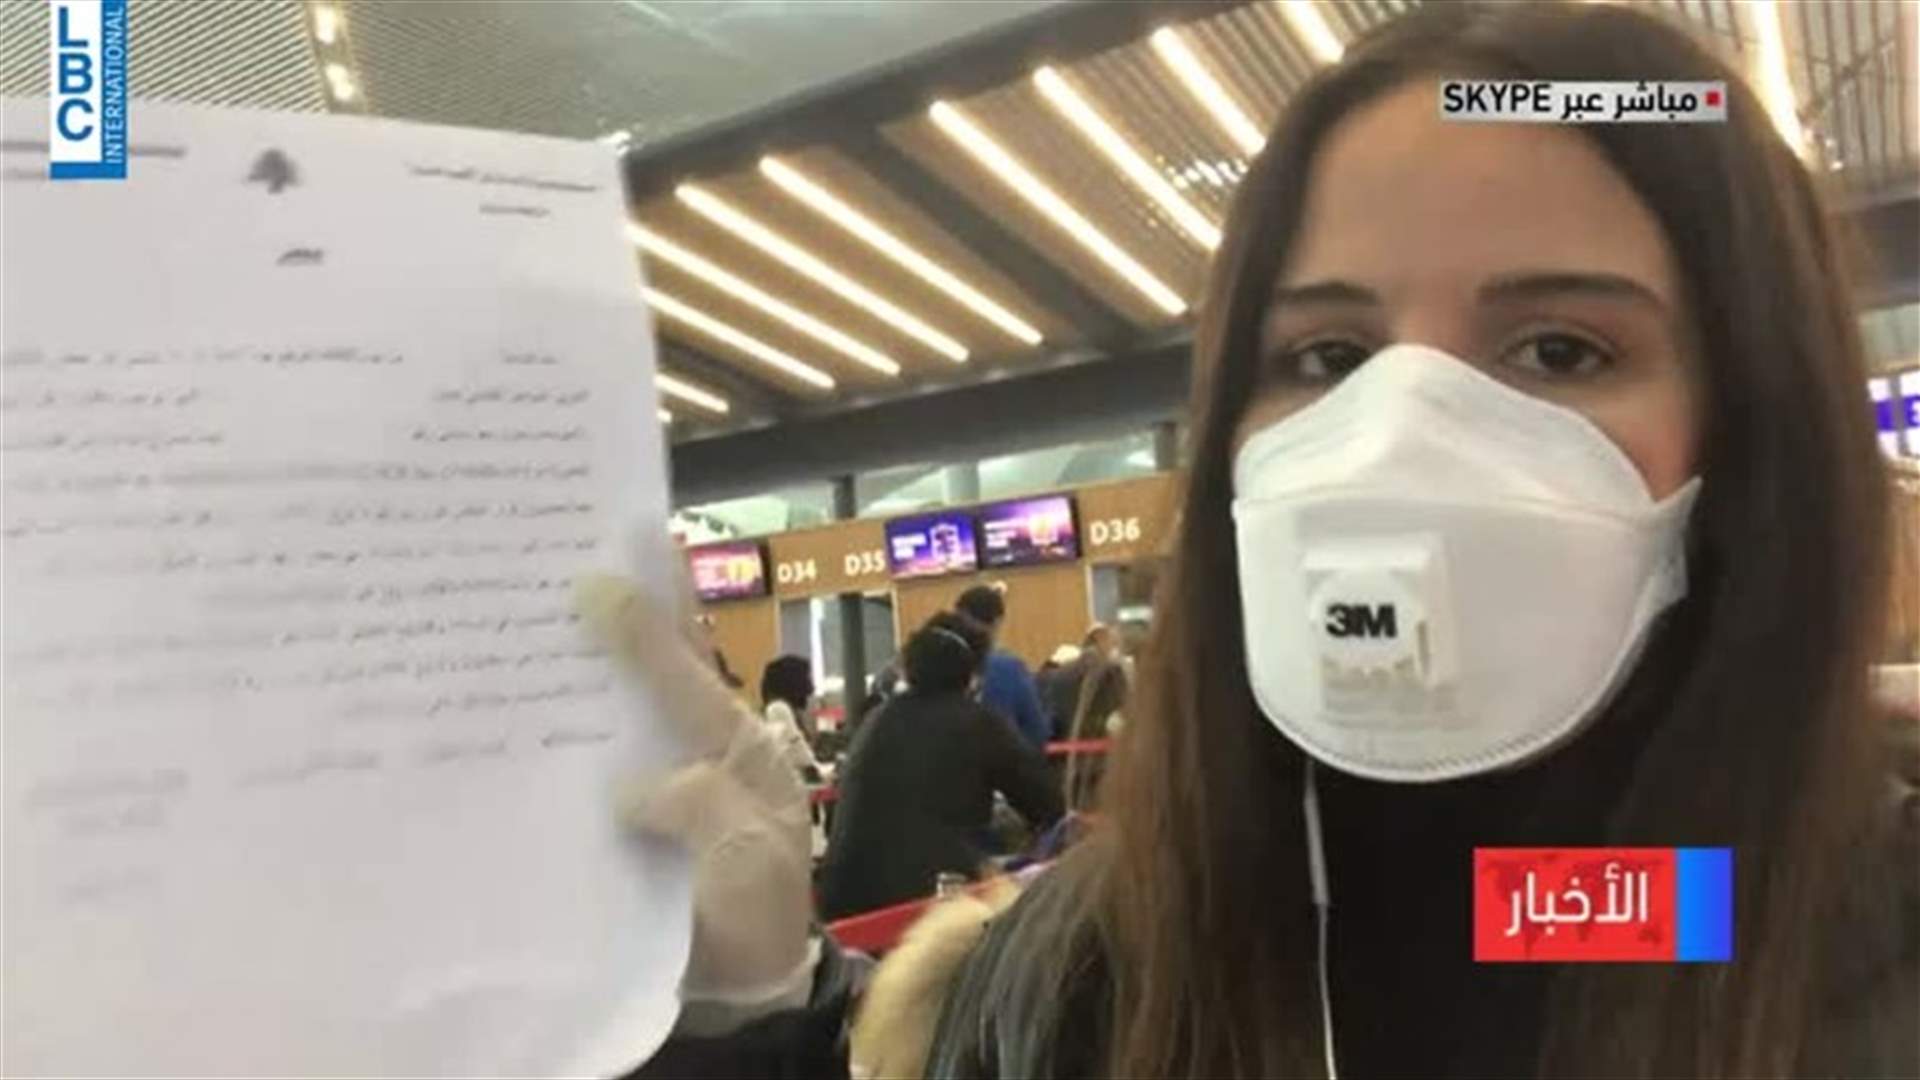 حوالى 80 لبنانياً يستعدون للعودة من تركيا الليلة... وجولة لميا سعيد من داخل مطار اسطنبول